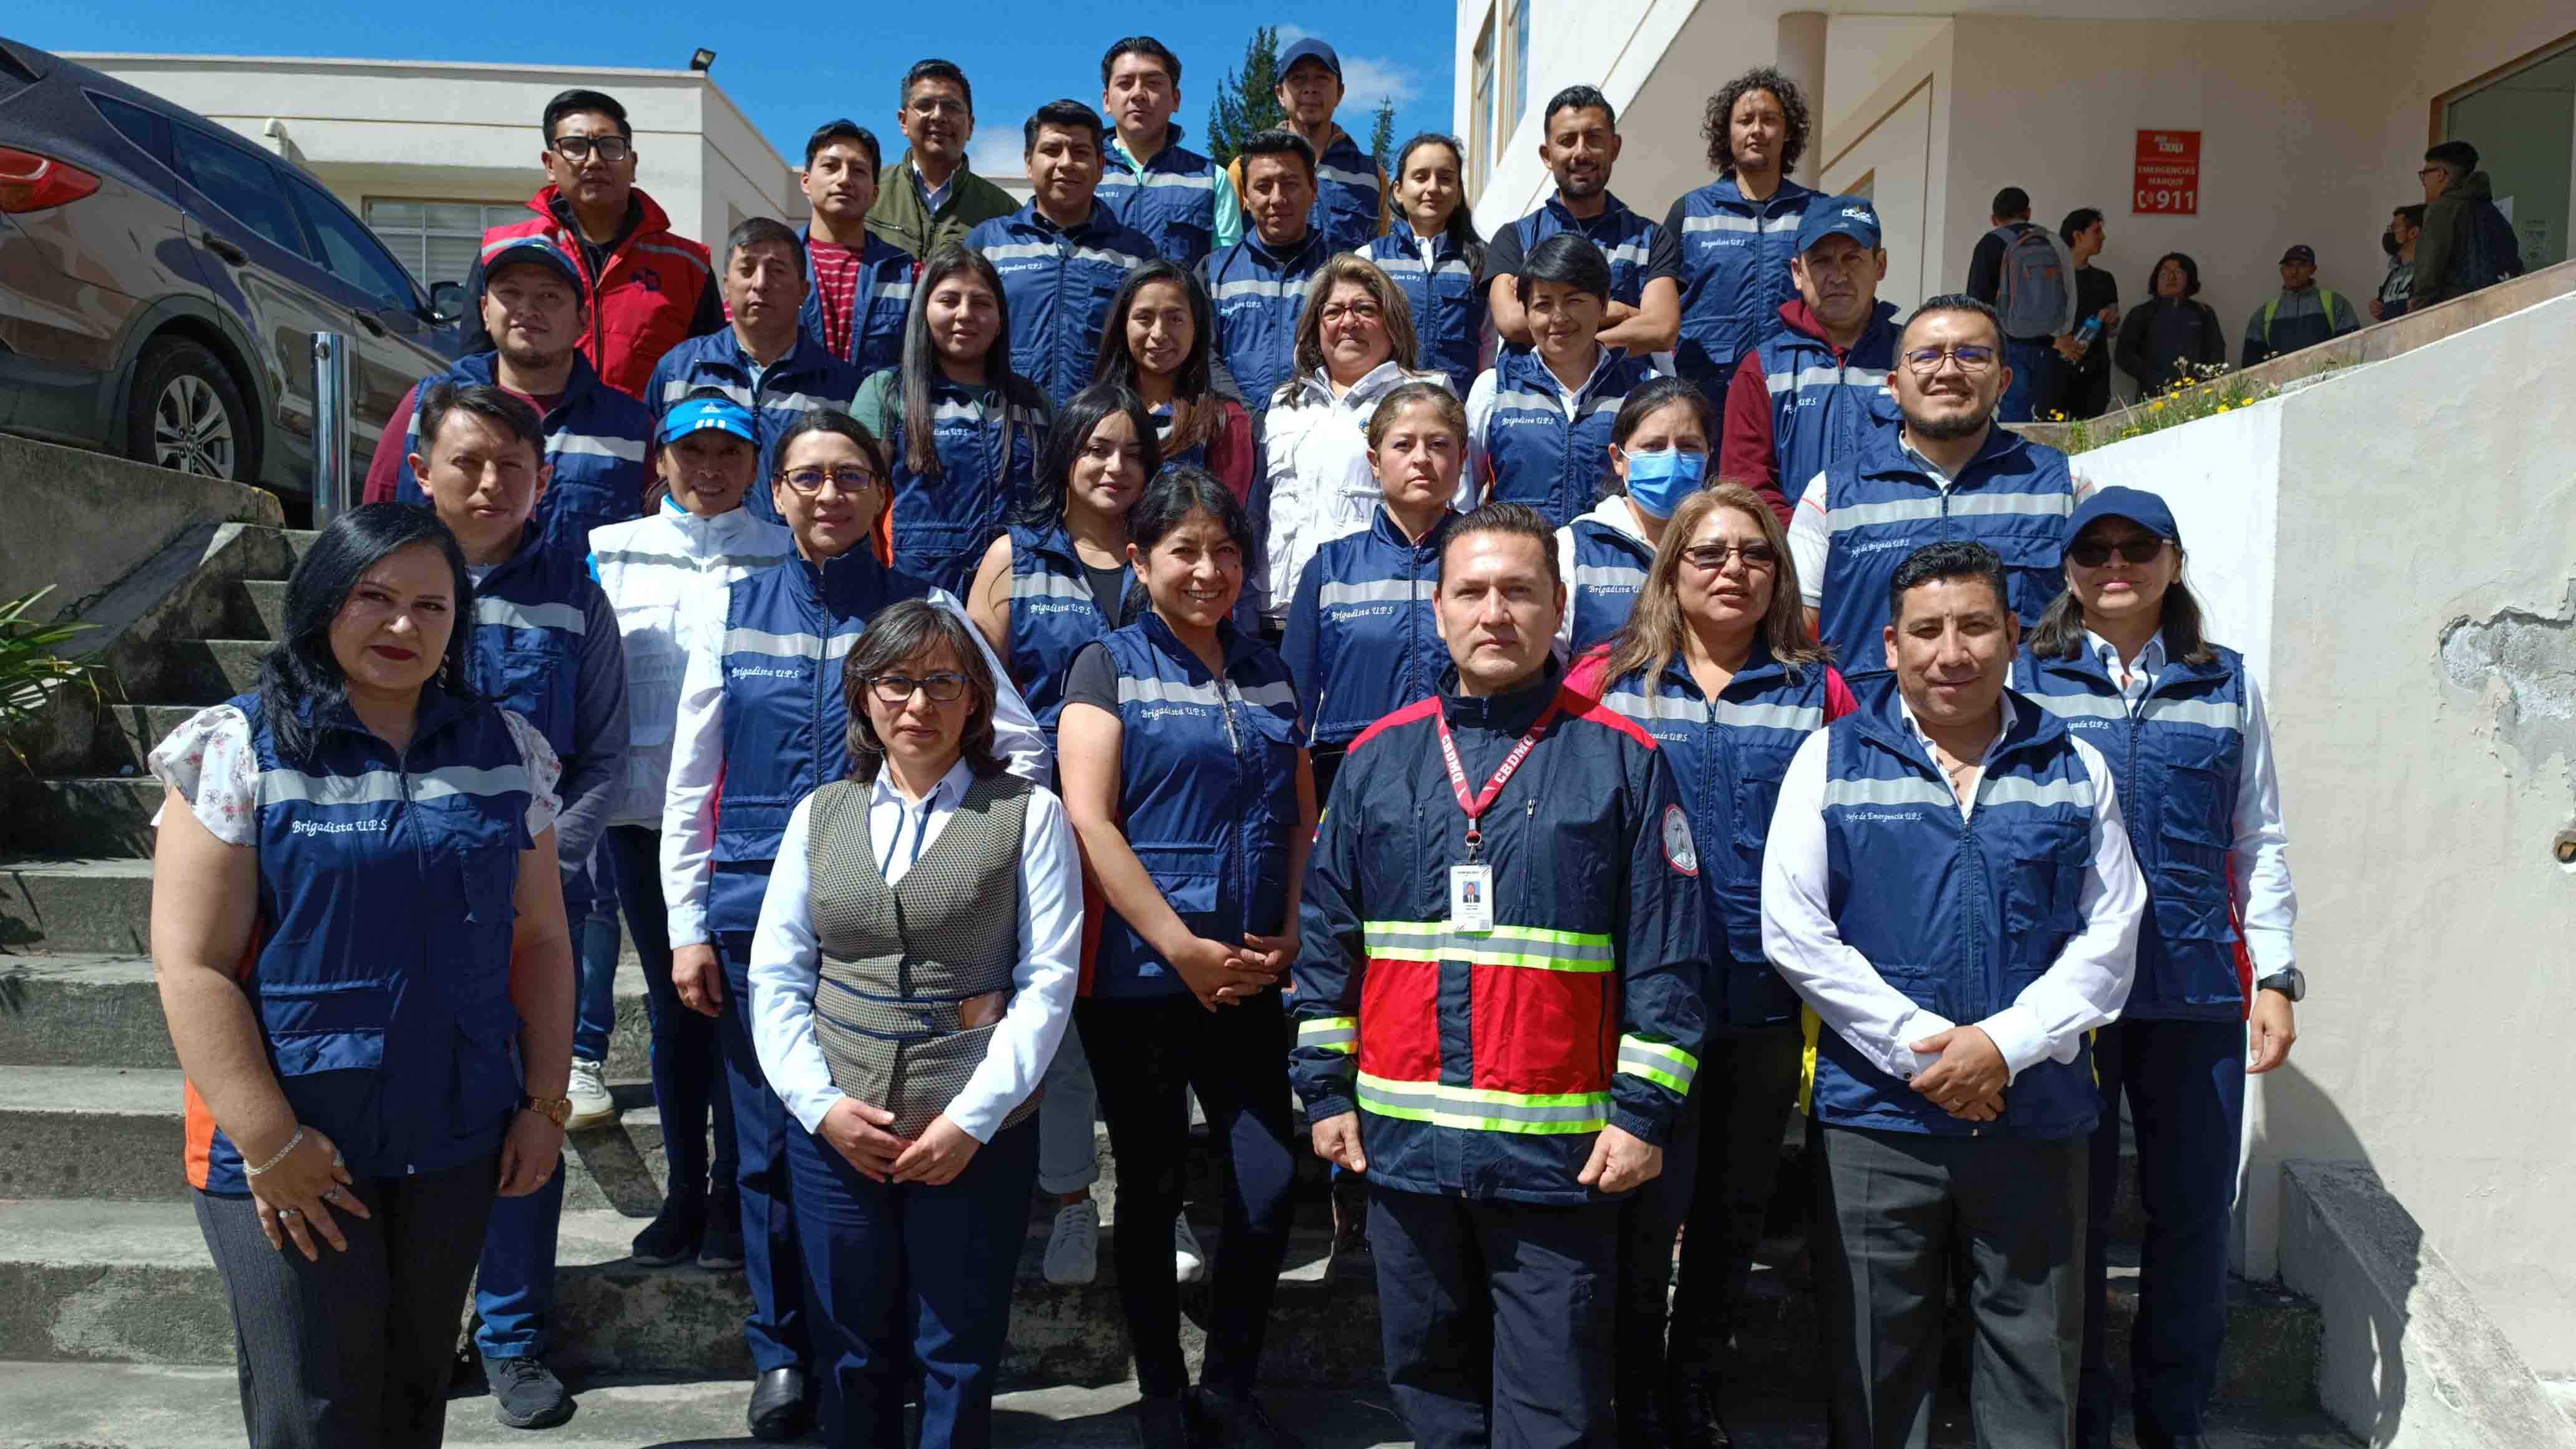 La comunidad universitaria de los campus El Girón y Sur participó activamente en los simulacros de evacuación organizados con el fin de construir una cultura de seguridad. Gracias, 